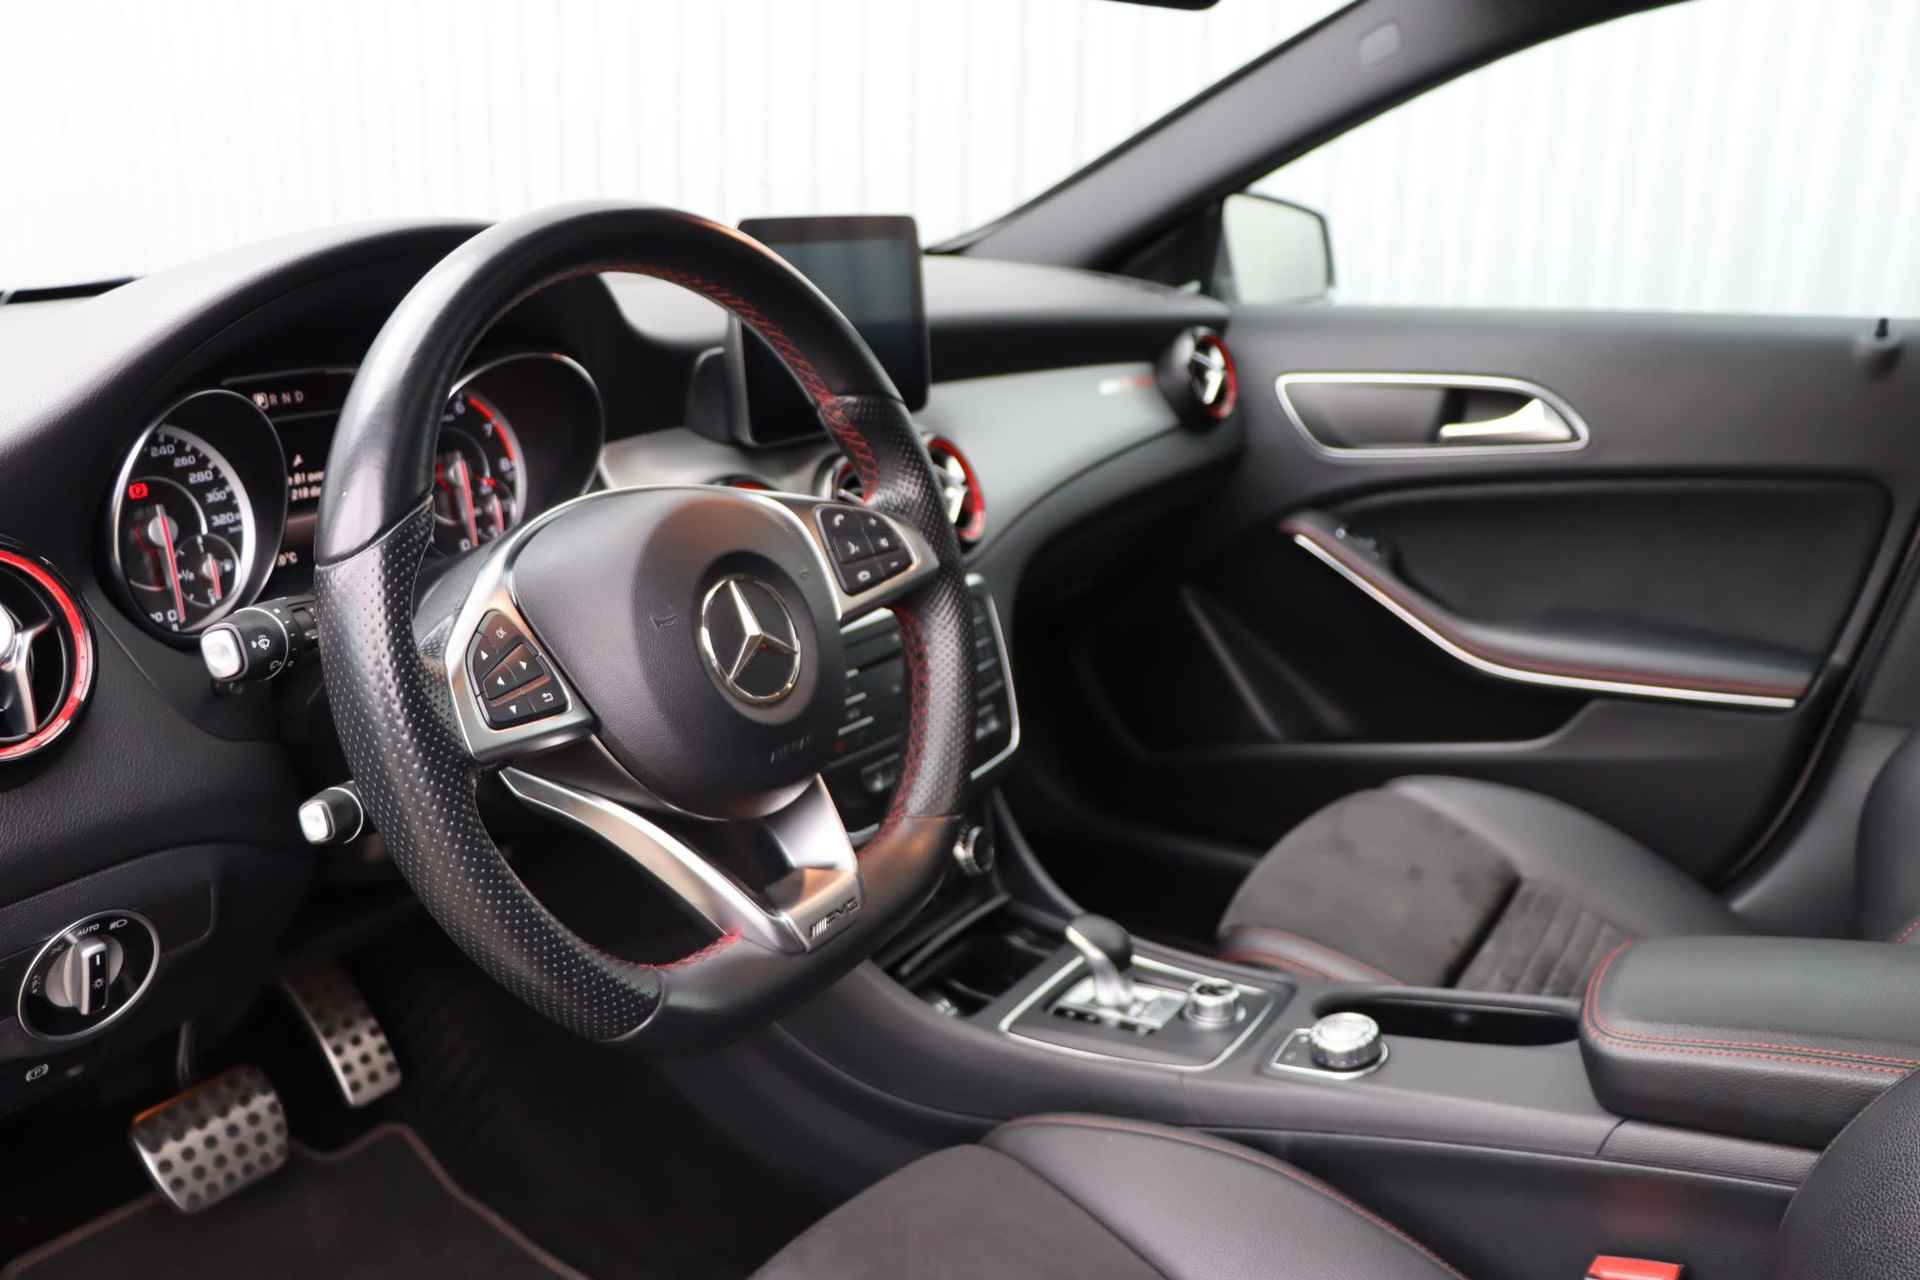 Mercedes-Benz GLA-klasse AMG 45 4MATIC | Panorama dak | Achteruitrijcamera | elektrische bestuurdersstoel | LED koplampen | elektronische achterklep | - 9/38